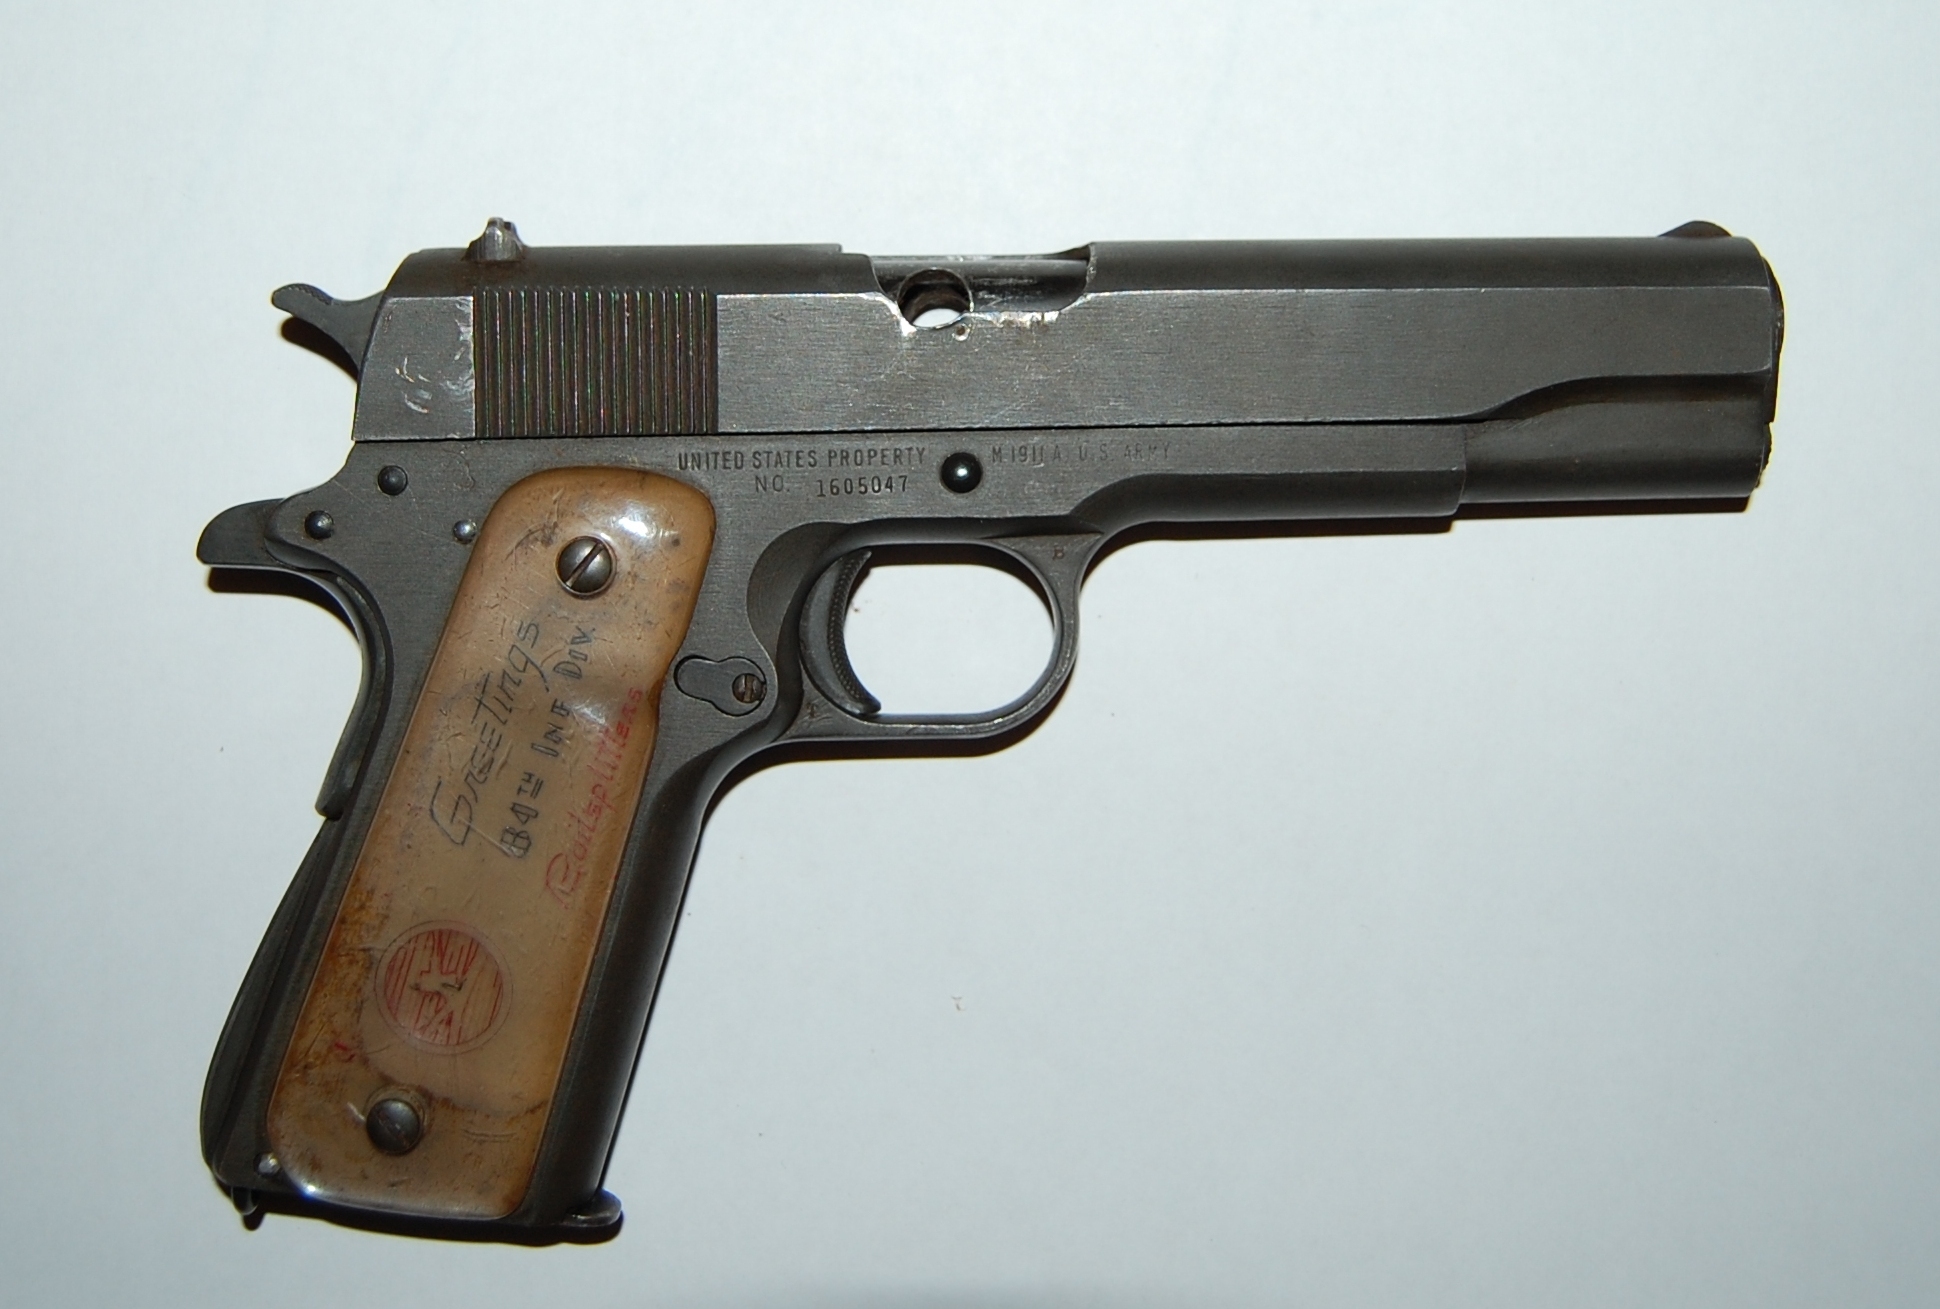 11.43-мм самозарядный пистолет « Кольт М1911» с дарственной надписью от 84-й пехотной дивизии генерал-майору Брикелю П.Н. Май 1945 года.